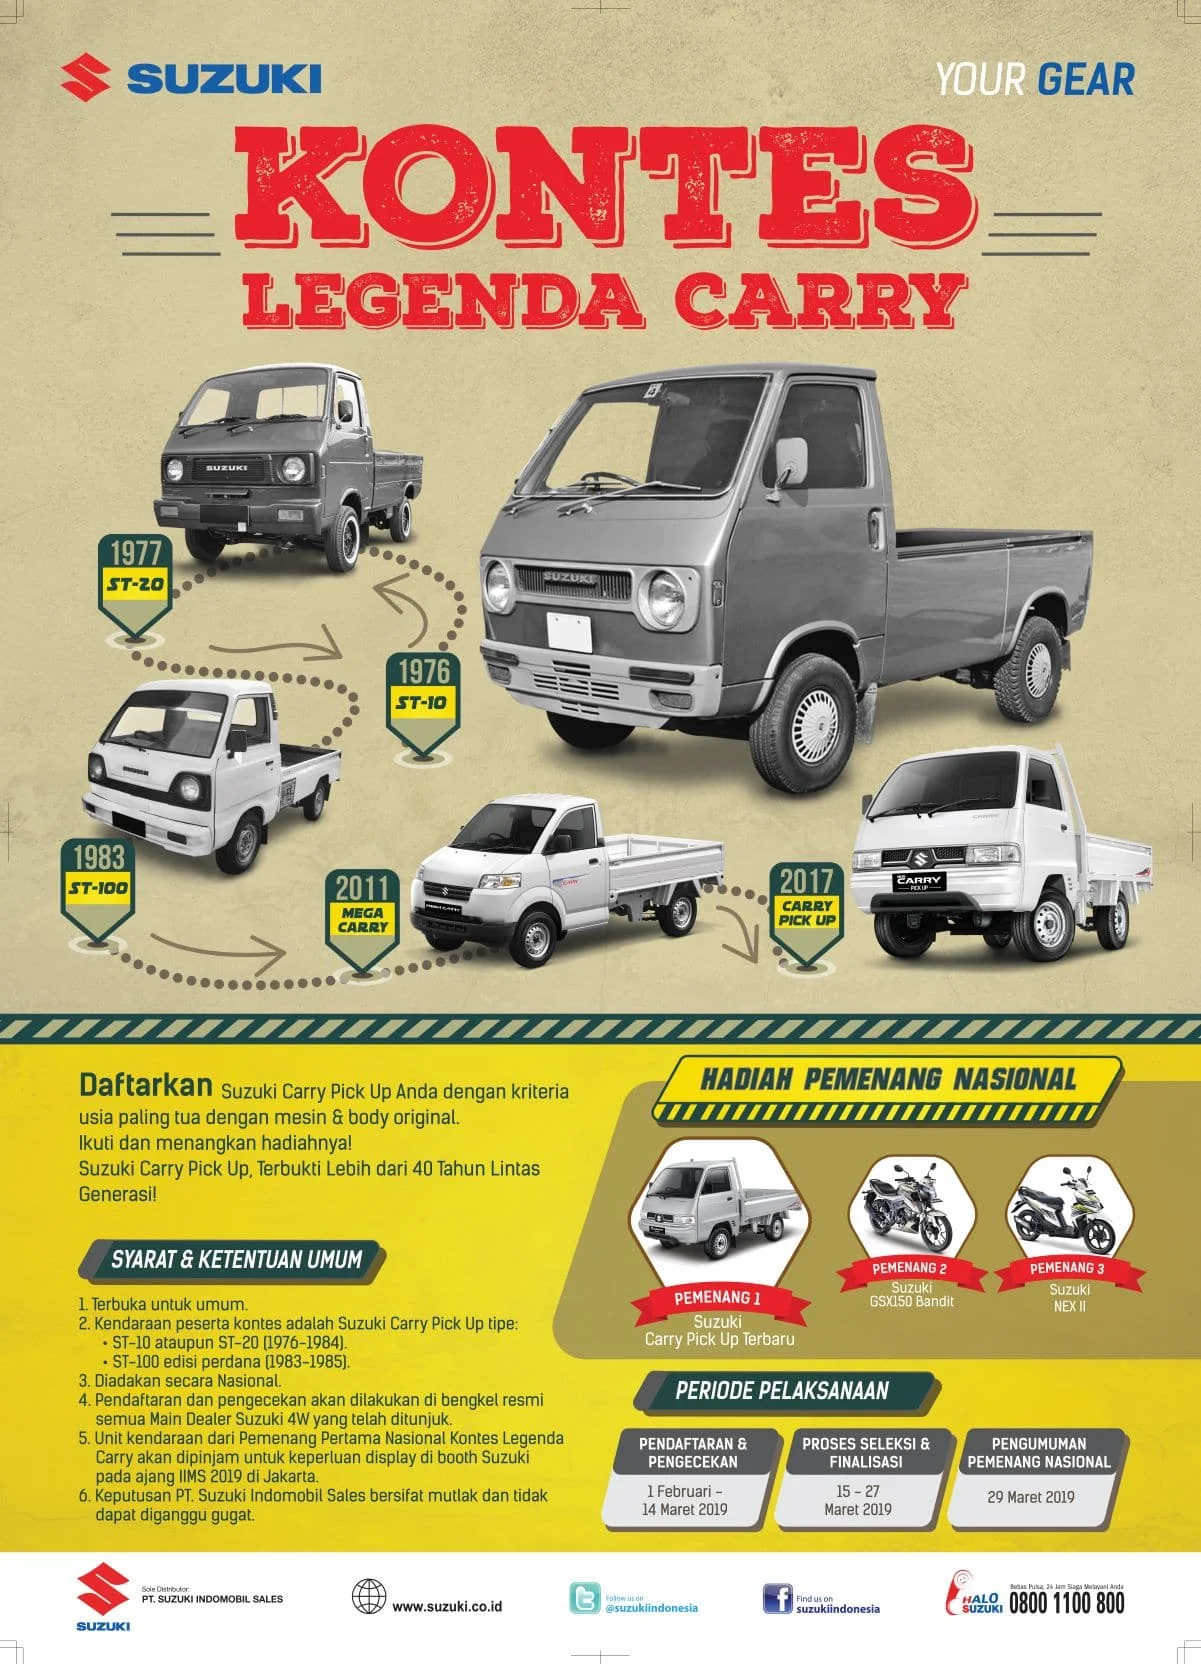 Kontes Legenda Carry Ajang Mencari Carry Pick Up Paling Lawas Dan Original